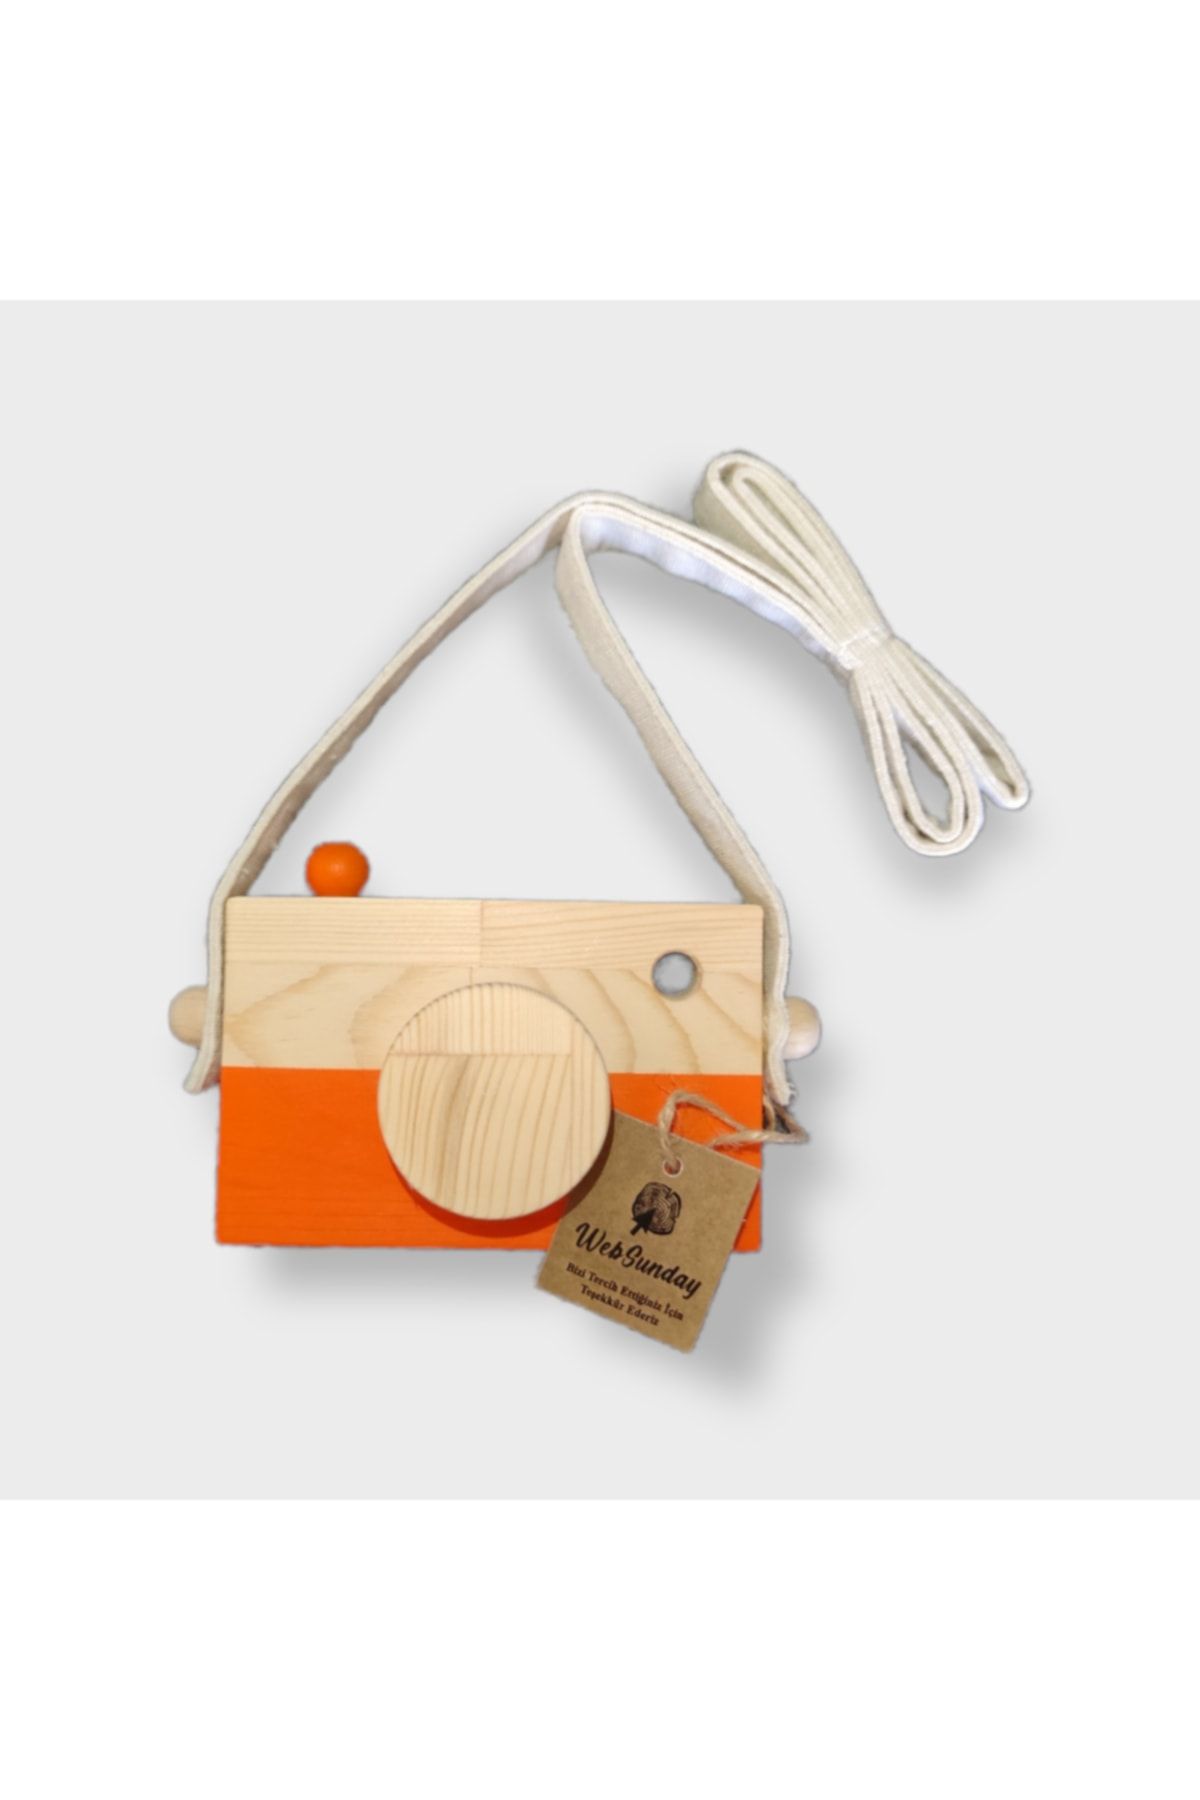 websunday Ahşap Waldorf Fotoğraf Makinesi, Eğitici Bebek Kamera Oyuncağı 2 3 4 5 6 Yaş Erkek Kız-turuncu